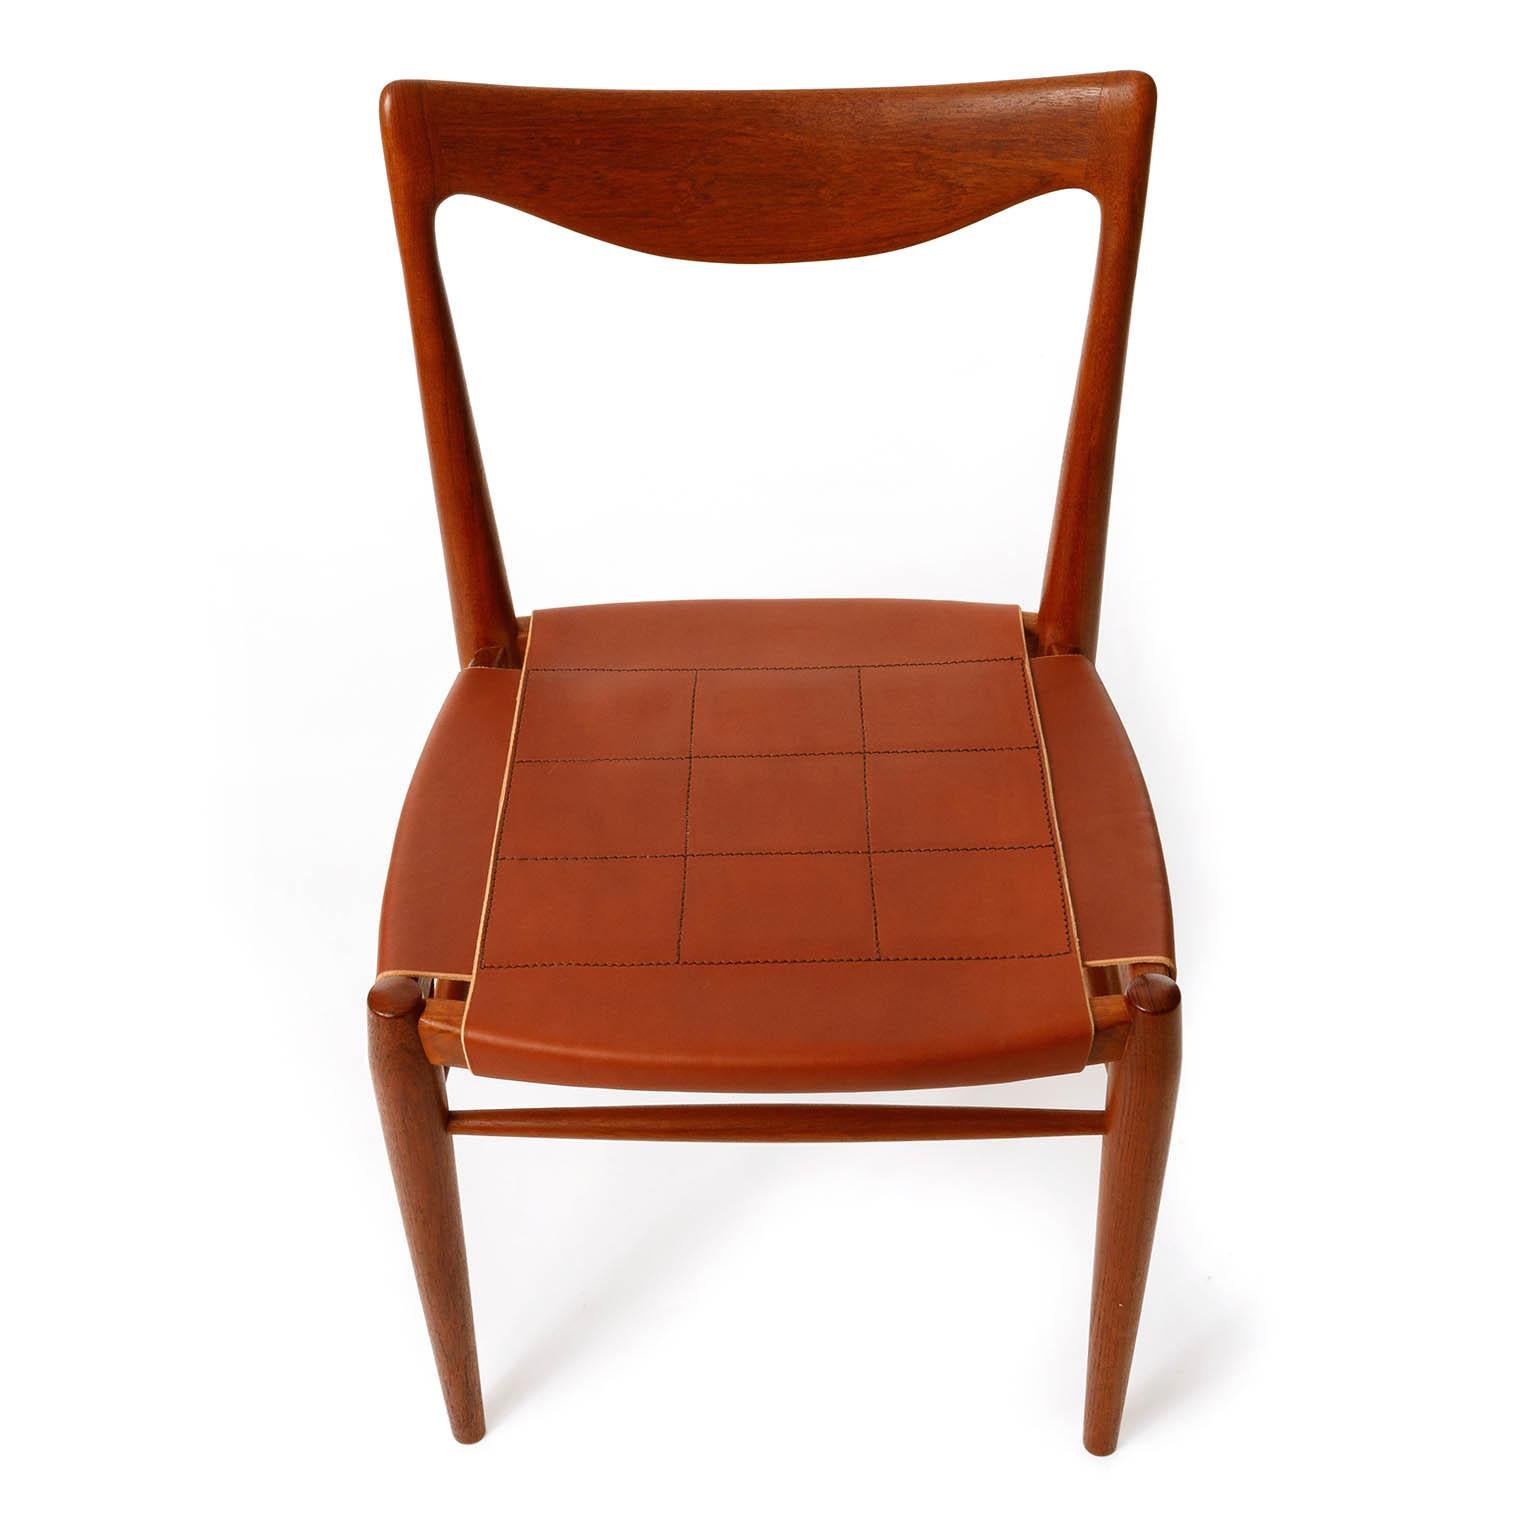 Sechs 'Bambi'-Stühle, Rastad & Relling für Gustav Bahus, cognacfarbenes Leder und Teakholz, 1950er Jahre (Skandinavische Moderne) im Angebot